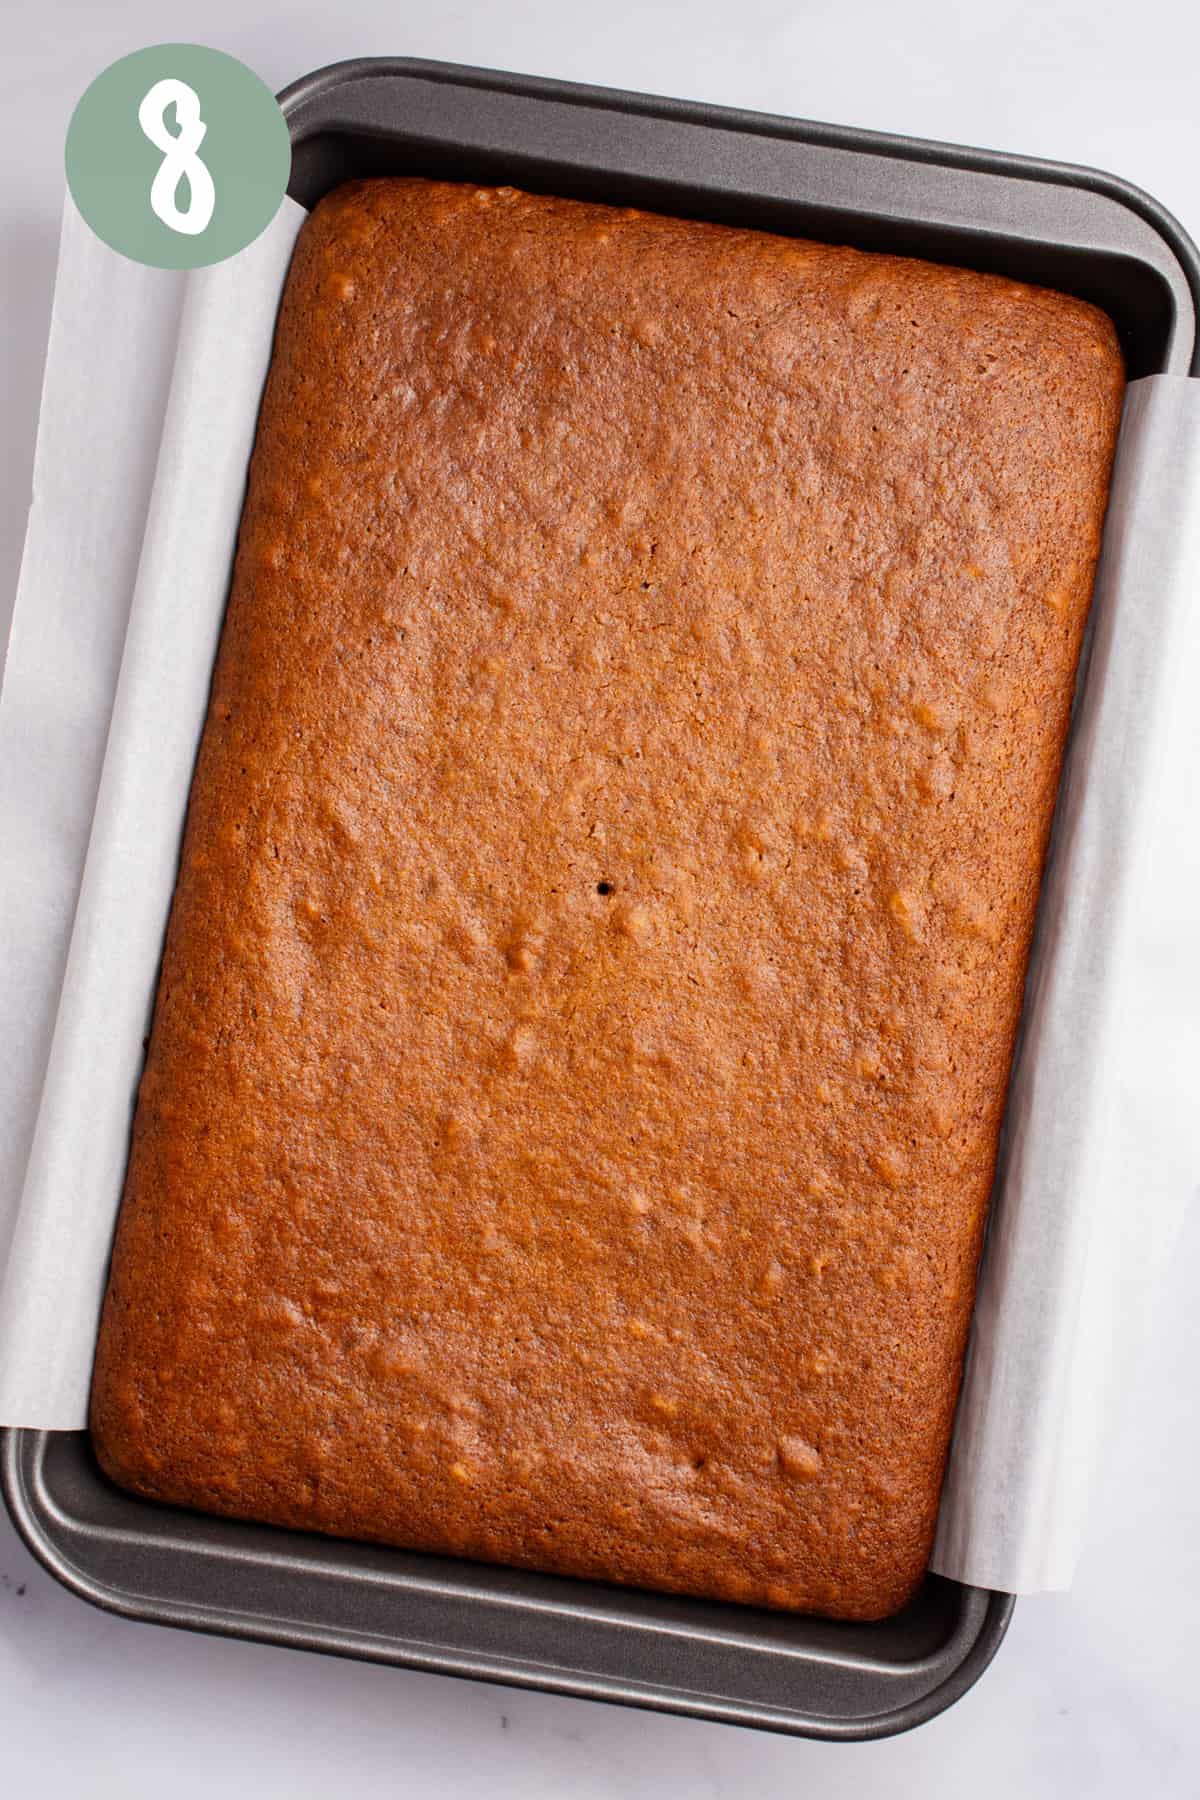 Vegan gingerbread cake after baking.